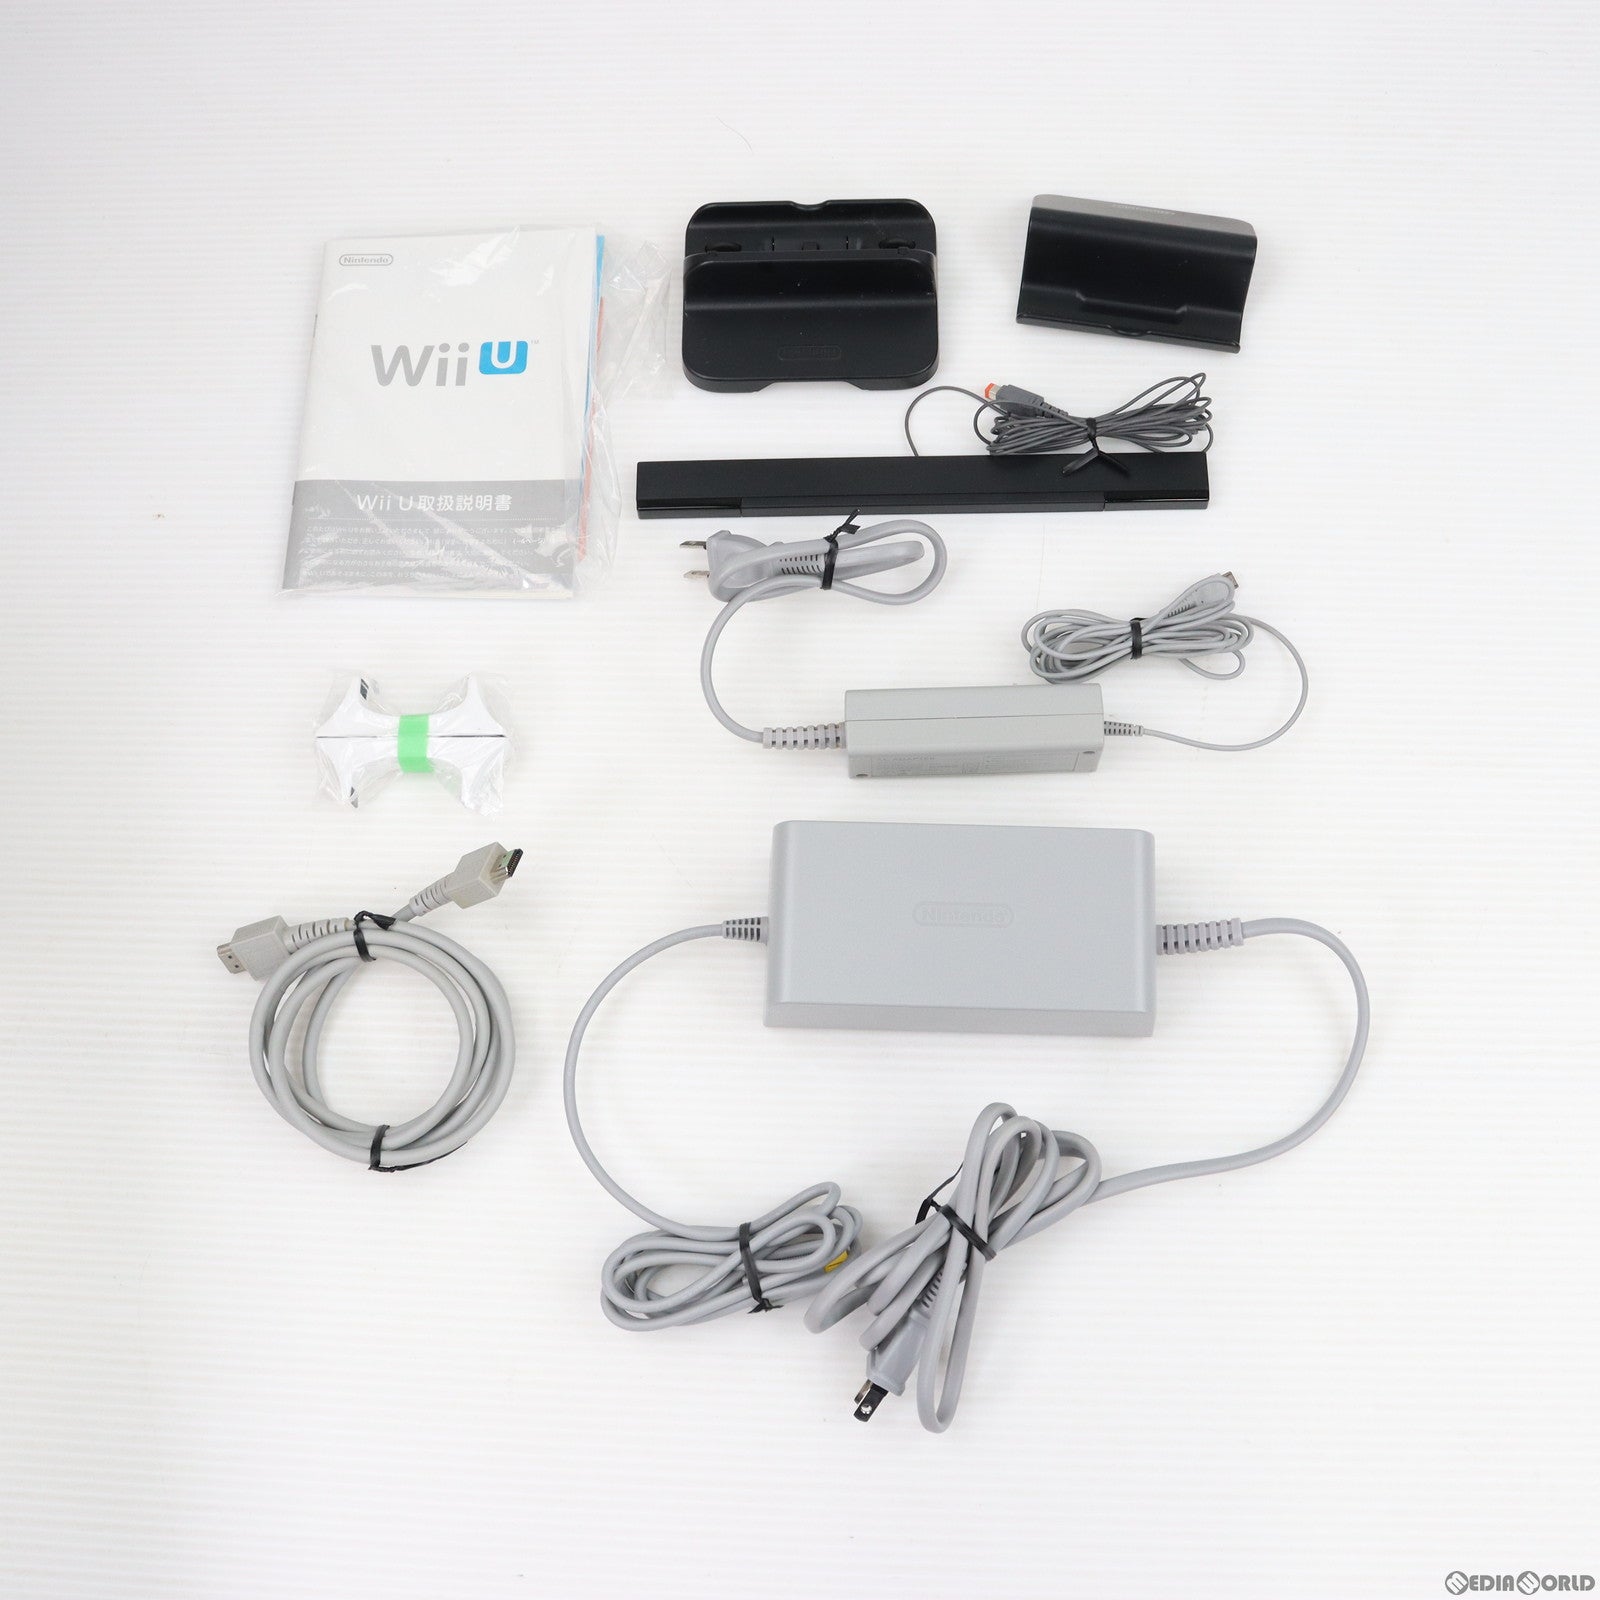 【中古即納】[本体][WiiU]Wii U すぐに遊べる マリオカート8セット シロ(WUP-S-WAGH)(20141113)